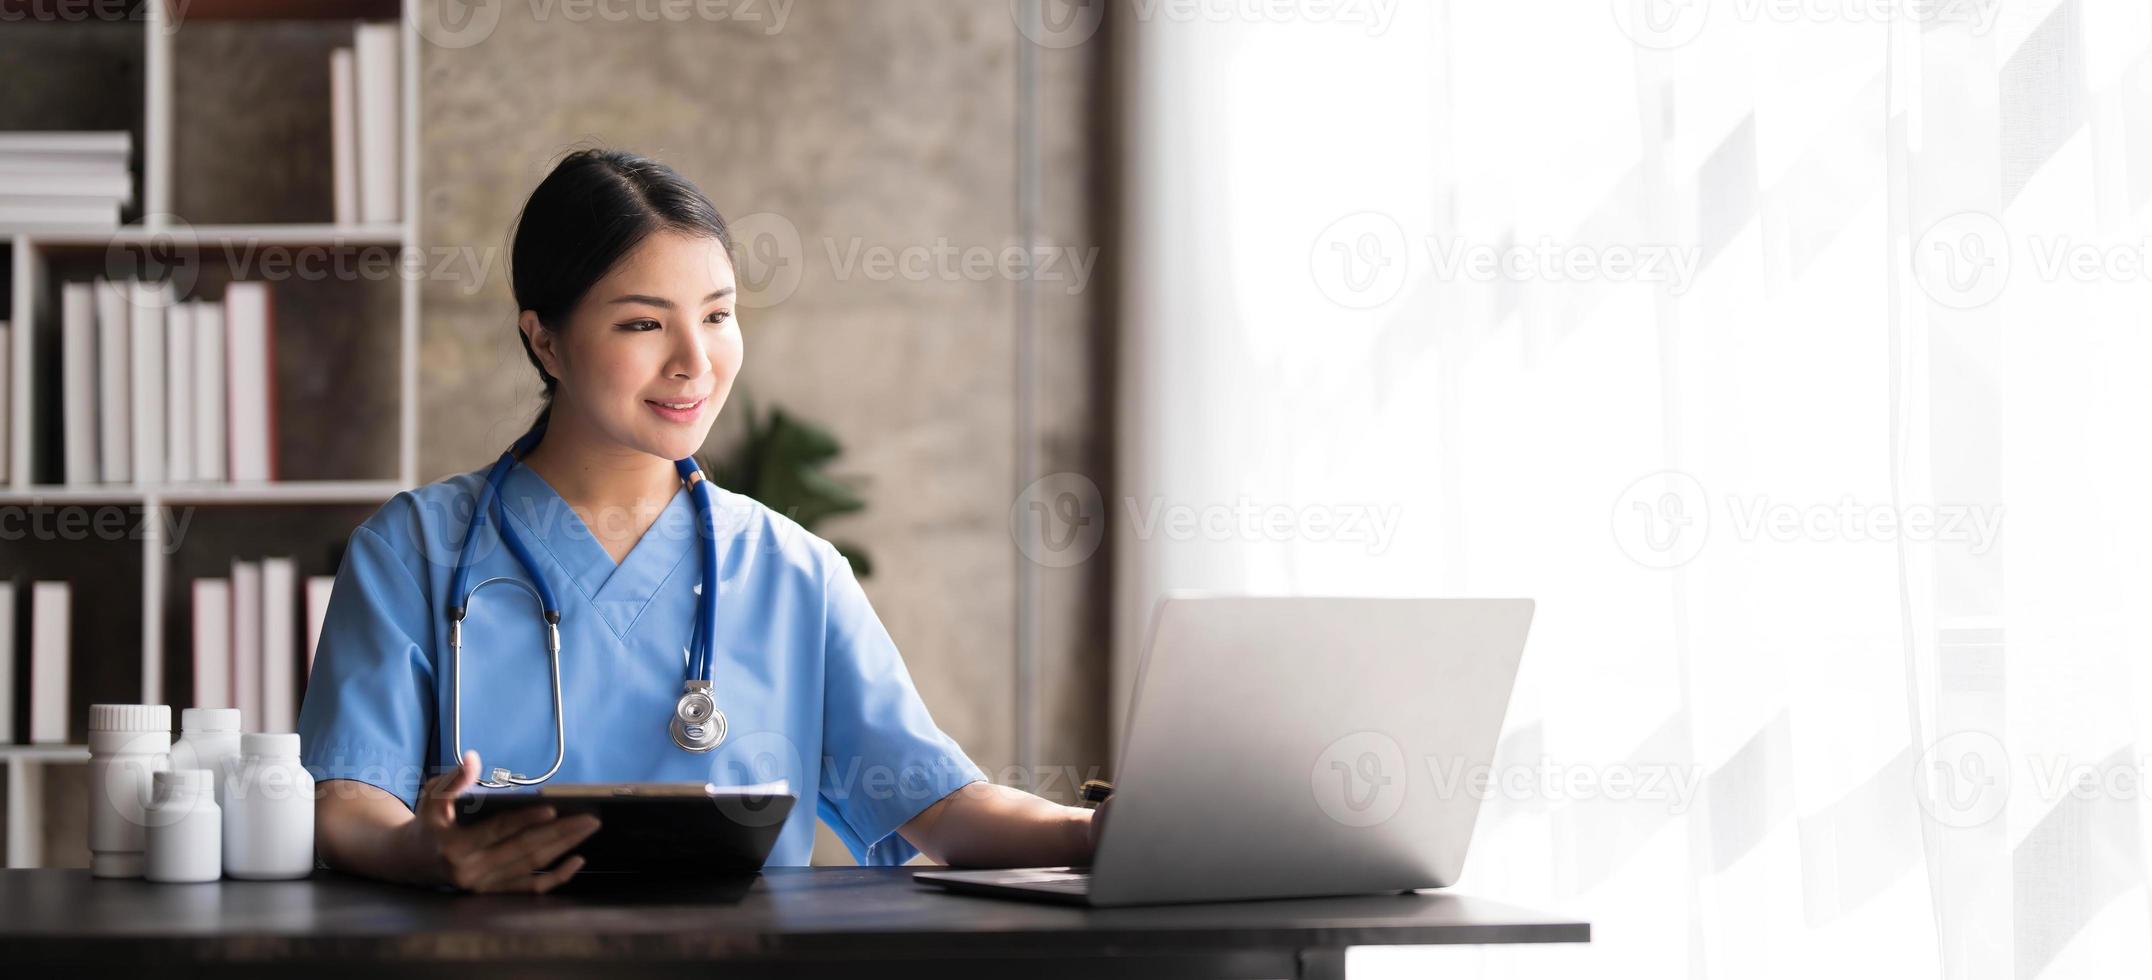 médecin asiatique jeune belle femme souriante en utilisant un ordinateur portable et en écrivant quelque chose sur des documents ou du papier blanc de presse-papiers au bureau de l'hôpital, concept médical de soins de santé photo